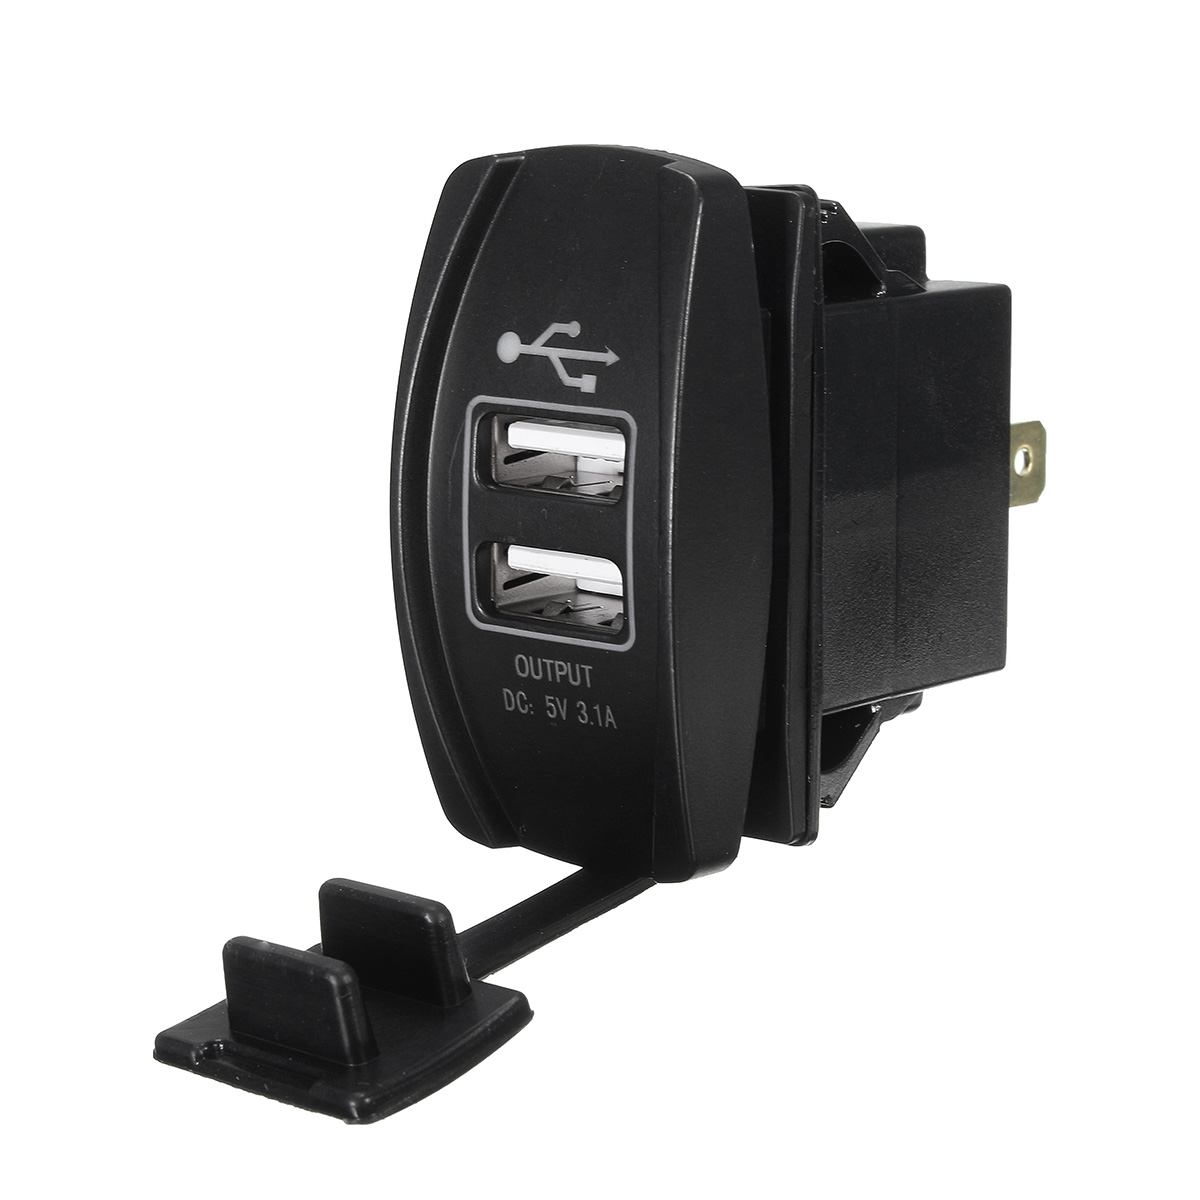 12V~24V Green LED Backlit Car Boat Dual USB Charger 5V 3.1A Output Rocker Switch